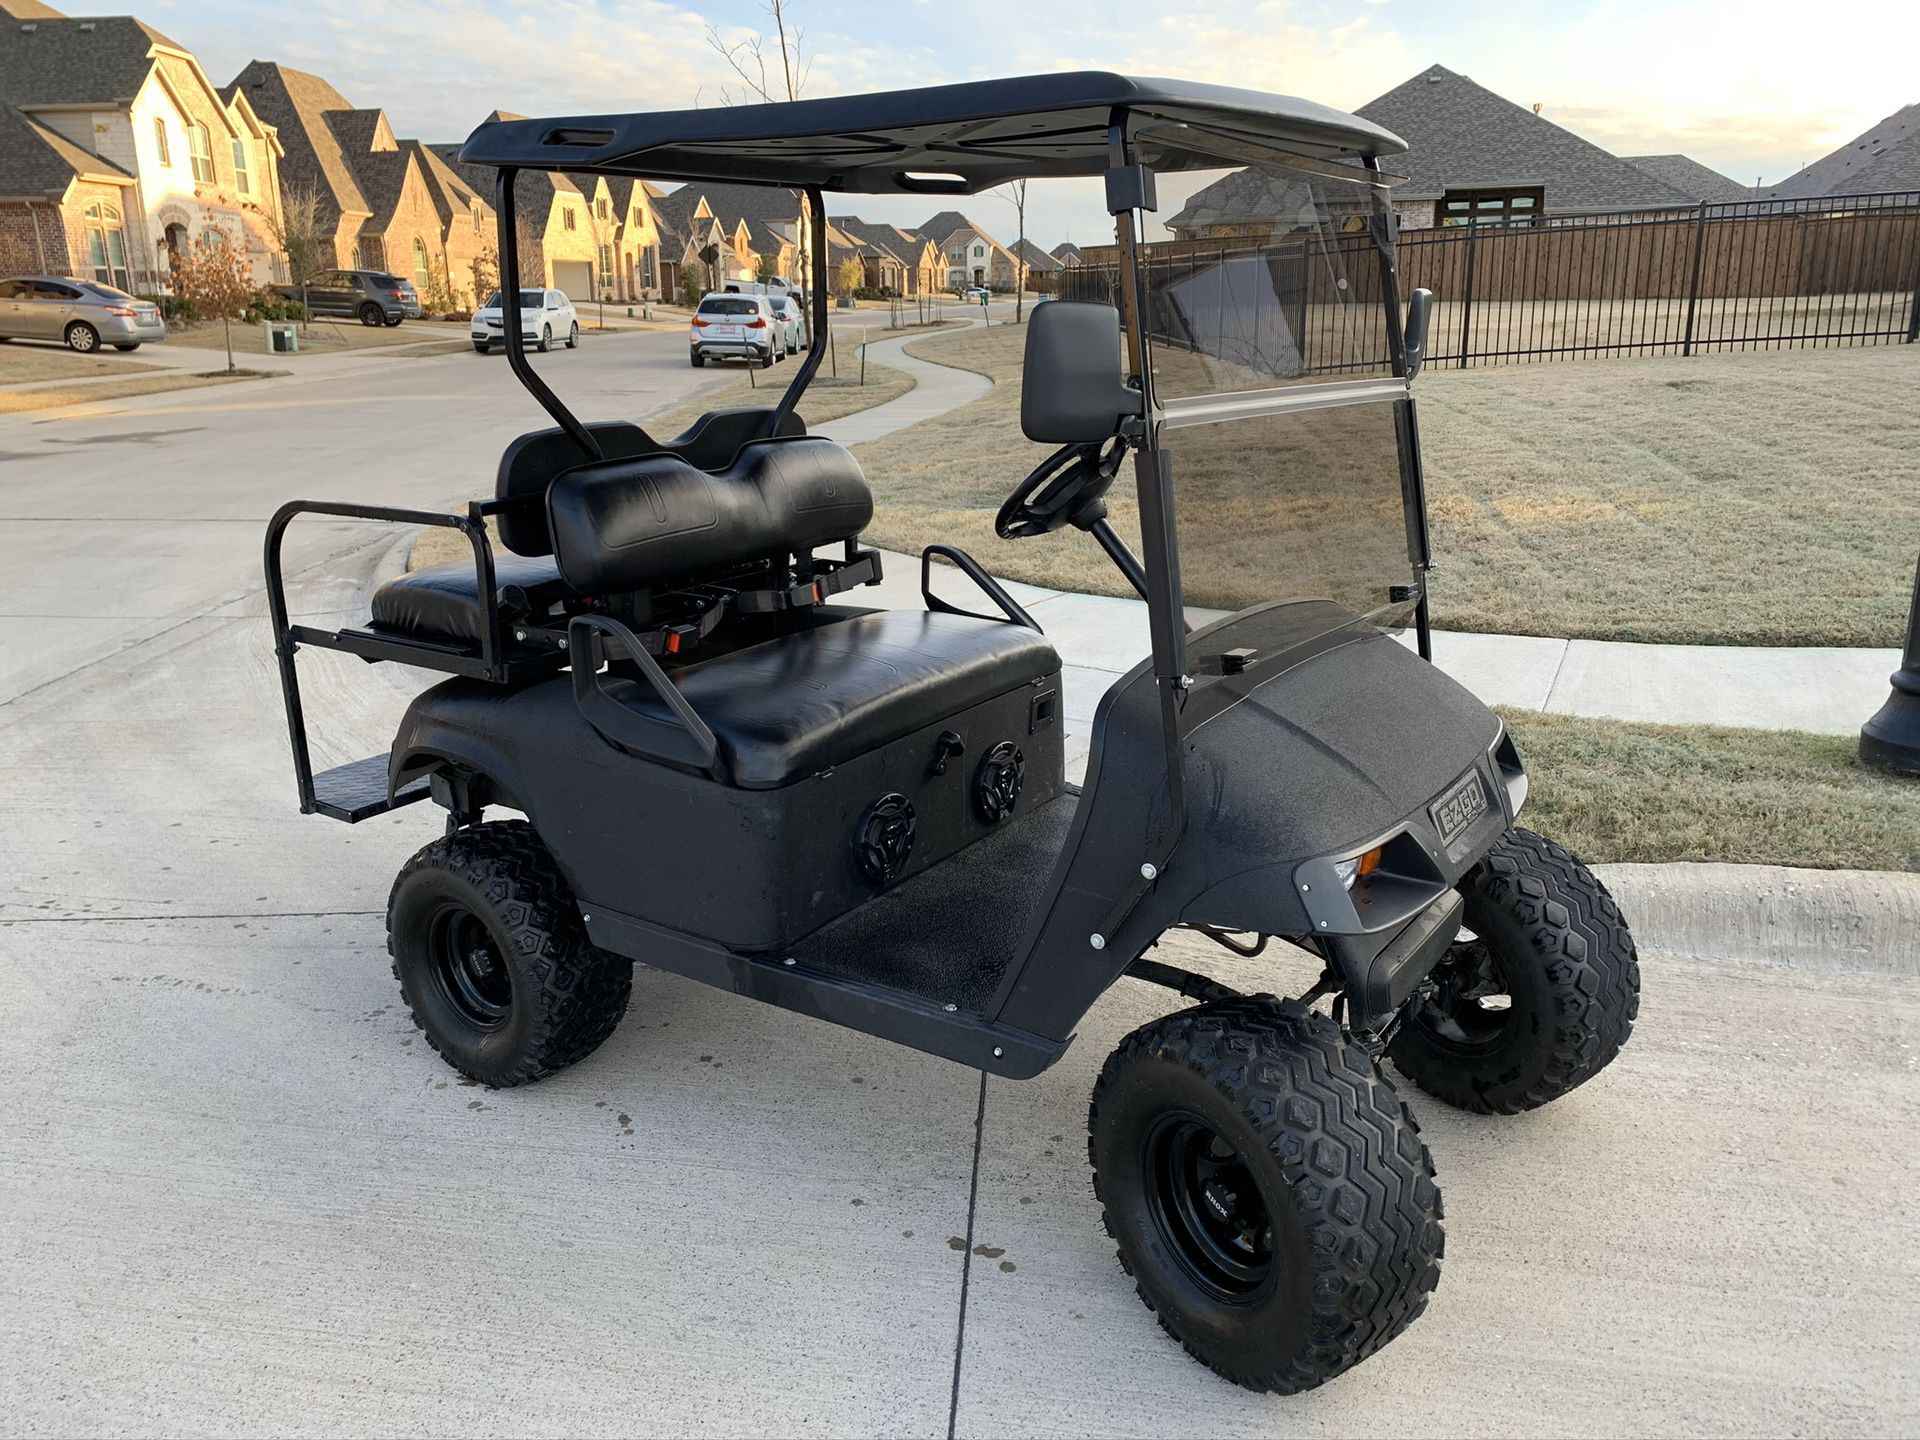 REDUCED (Originally $3,900) EZGO Golf Cart For Sale!